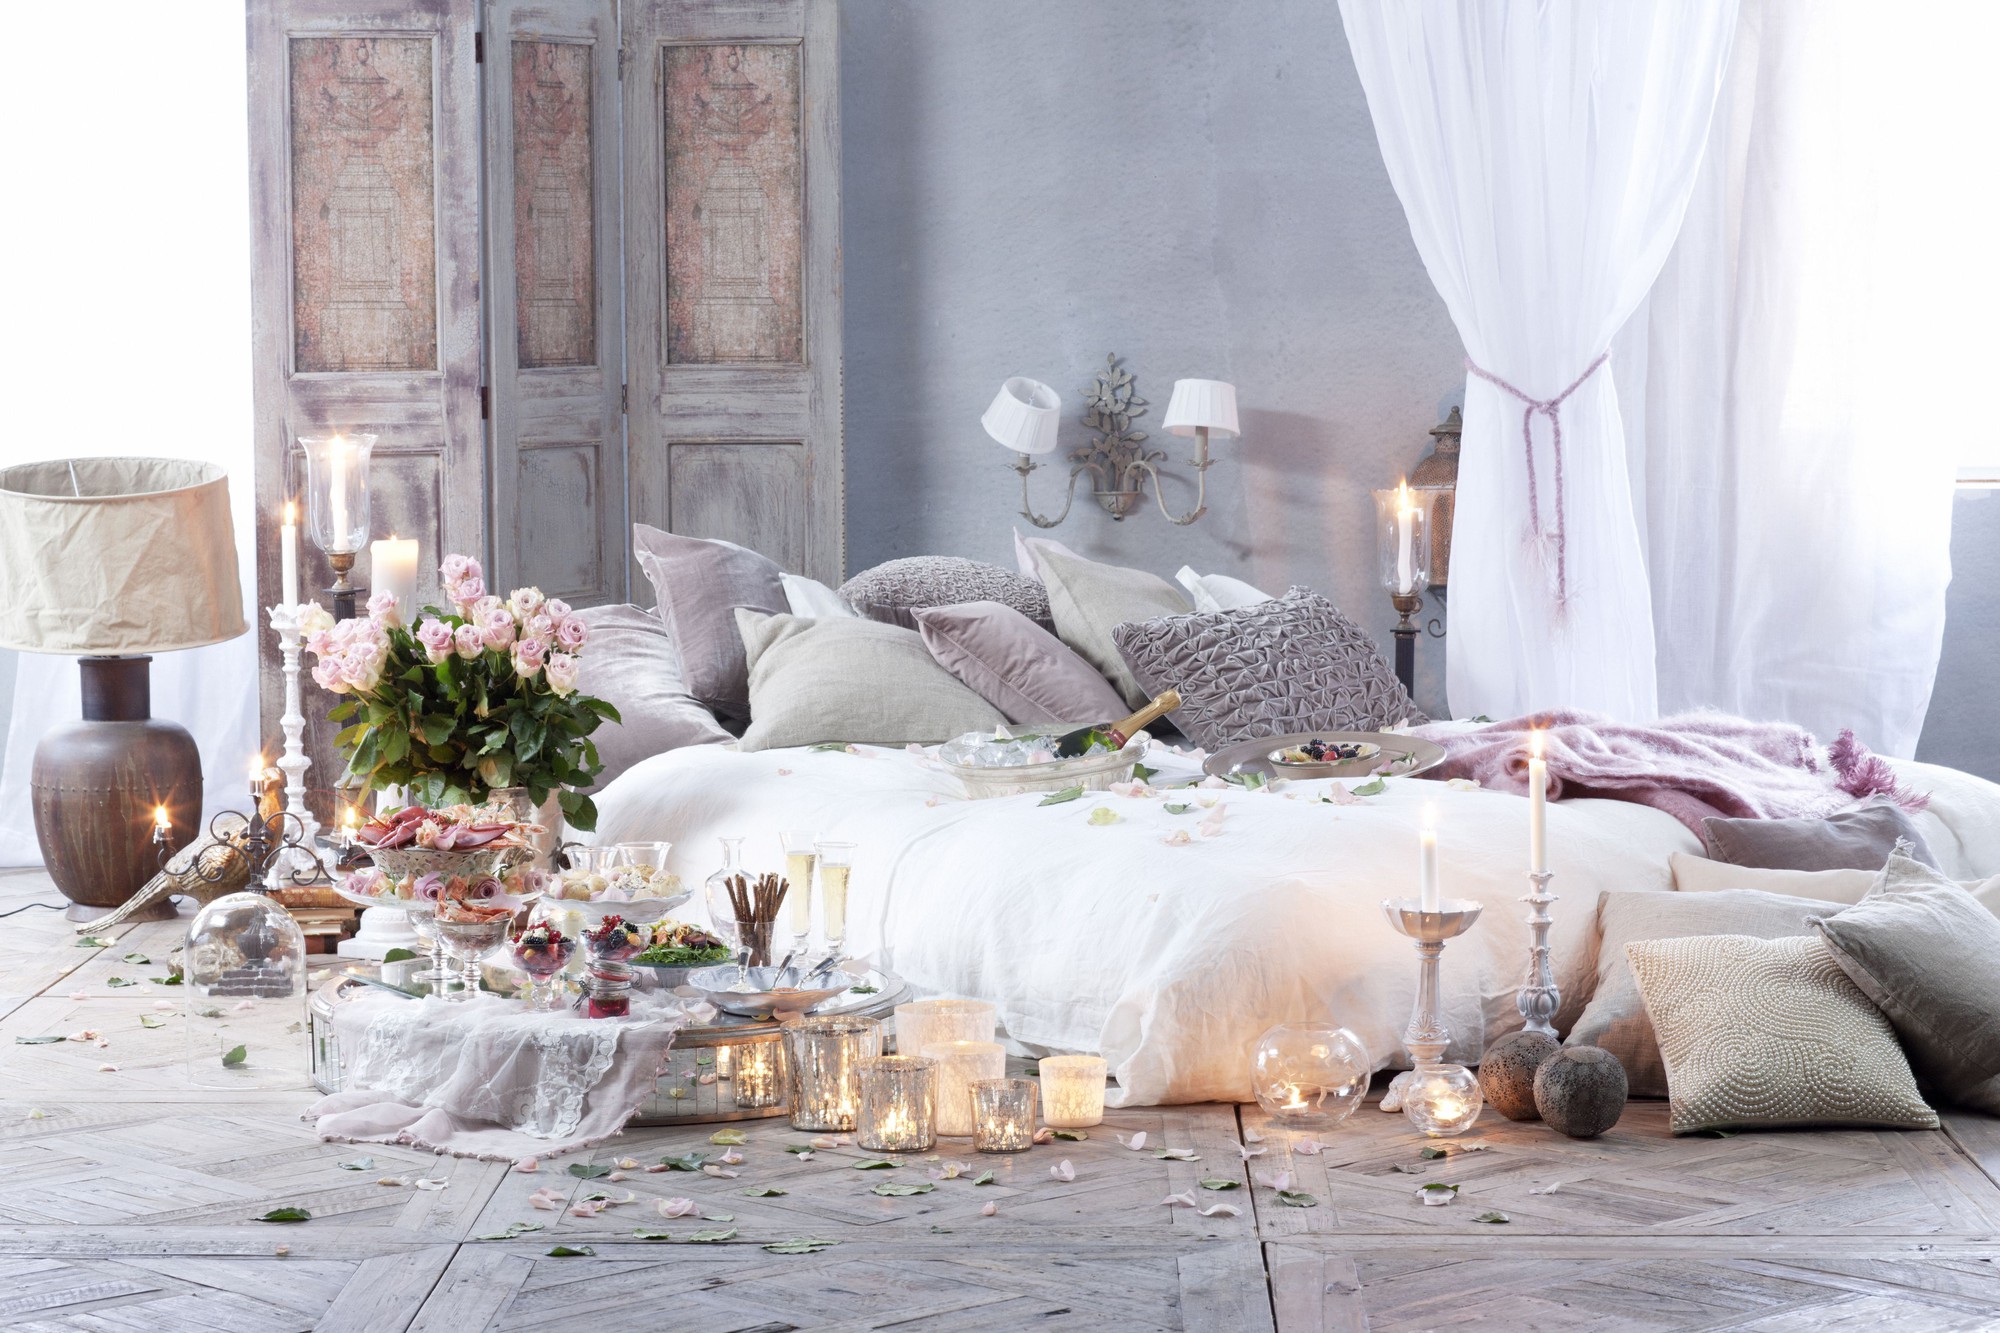 Trang trí giường cưới đẹp ngọt ngào và lãng mạn với hoa tươi